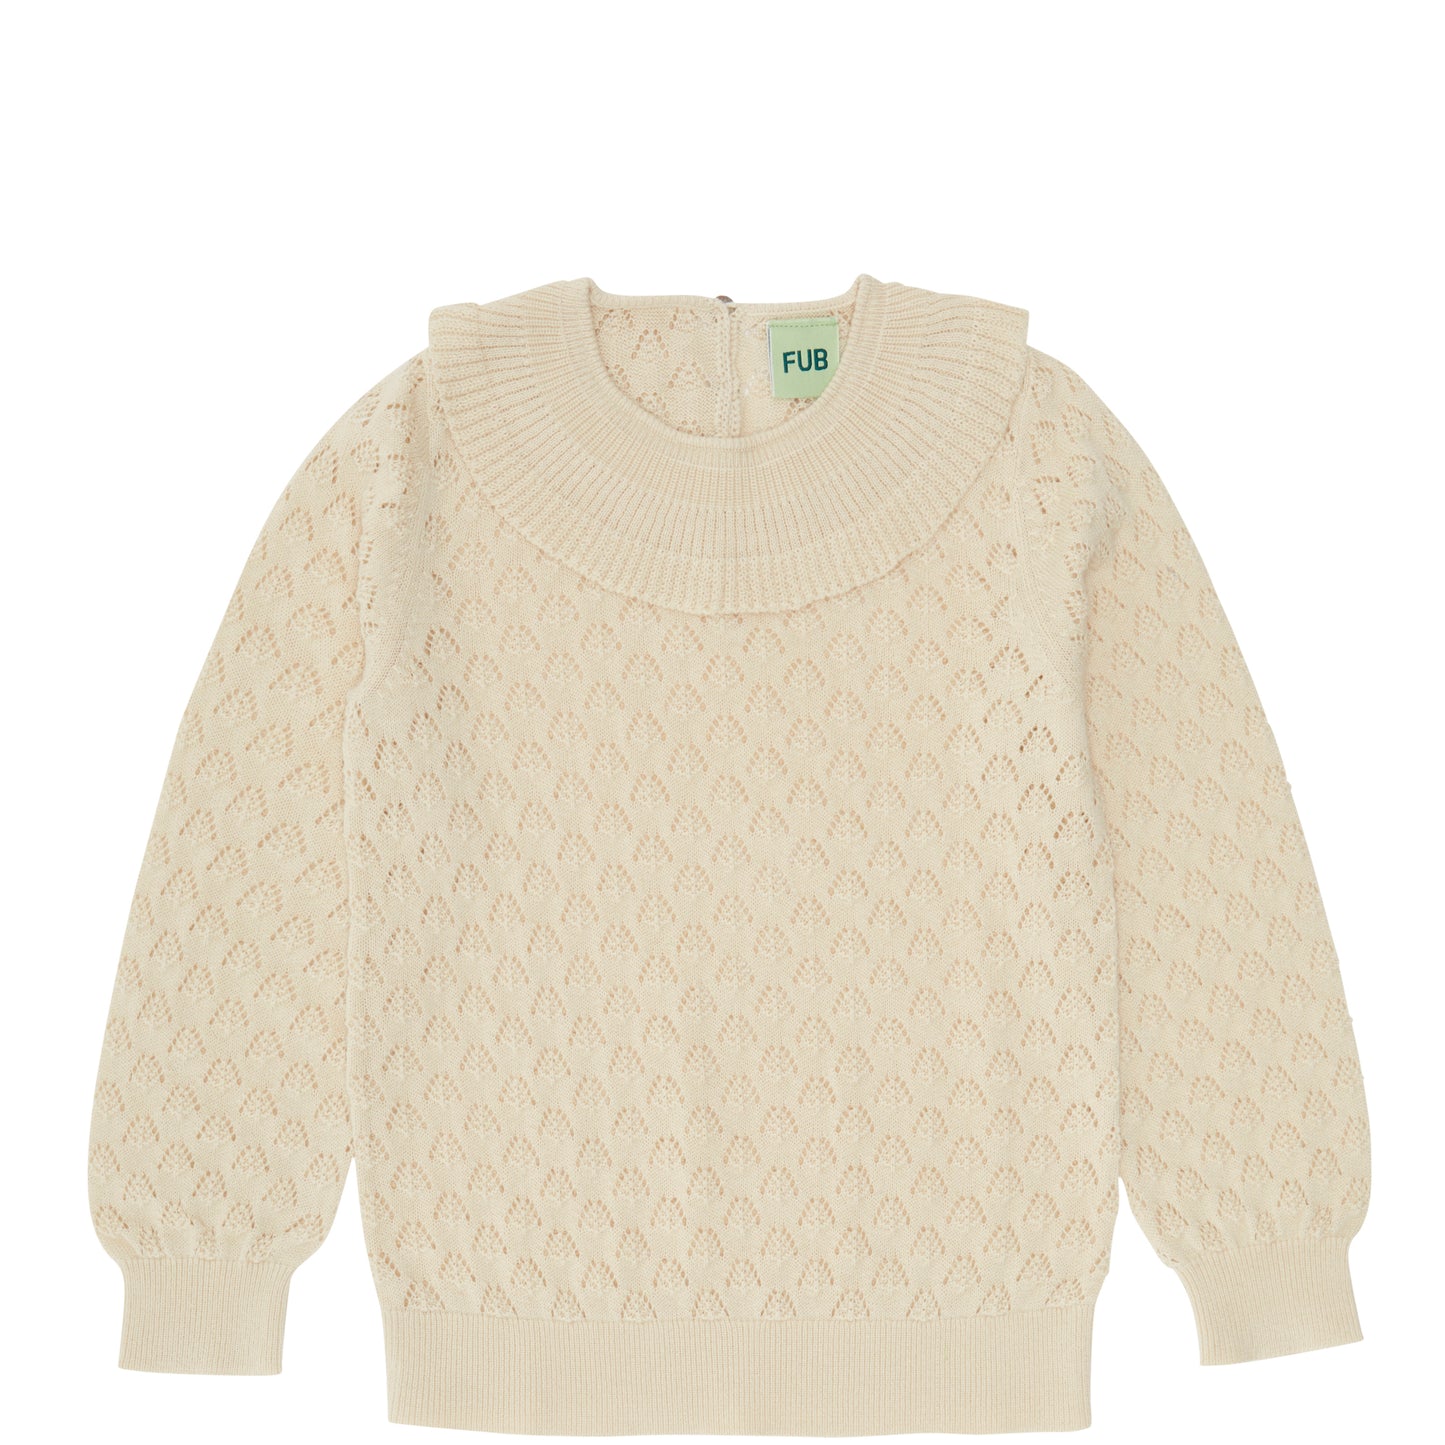 Pullover mit Rüschen-Kragen ecru, Organic Cotton, FUB Babywear